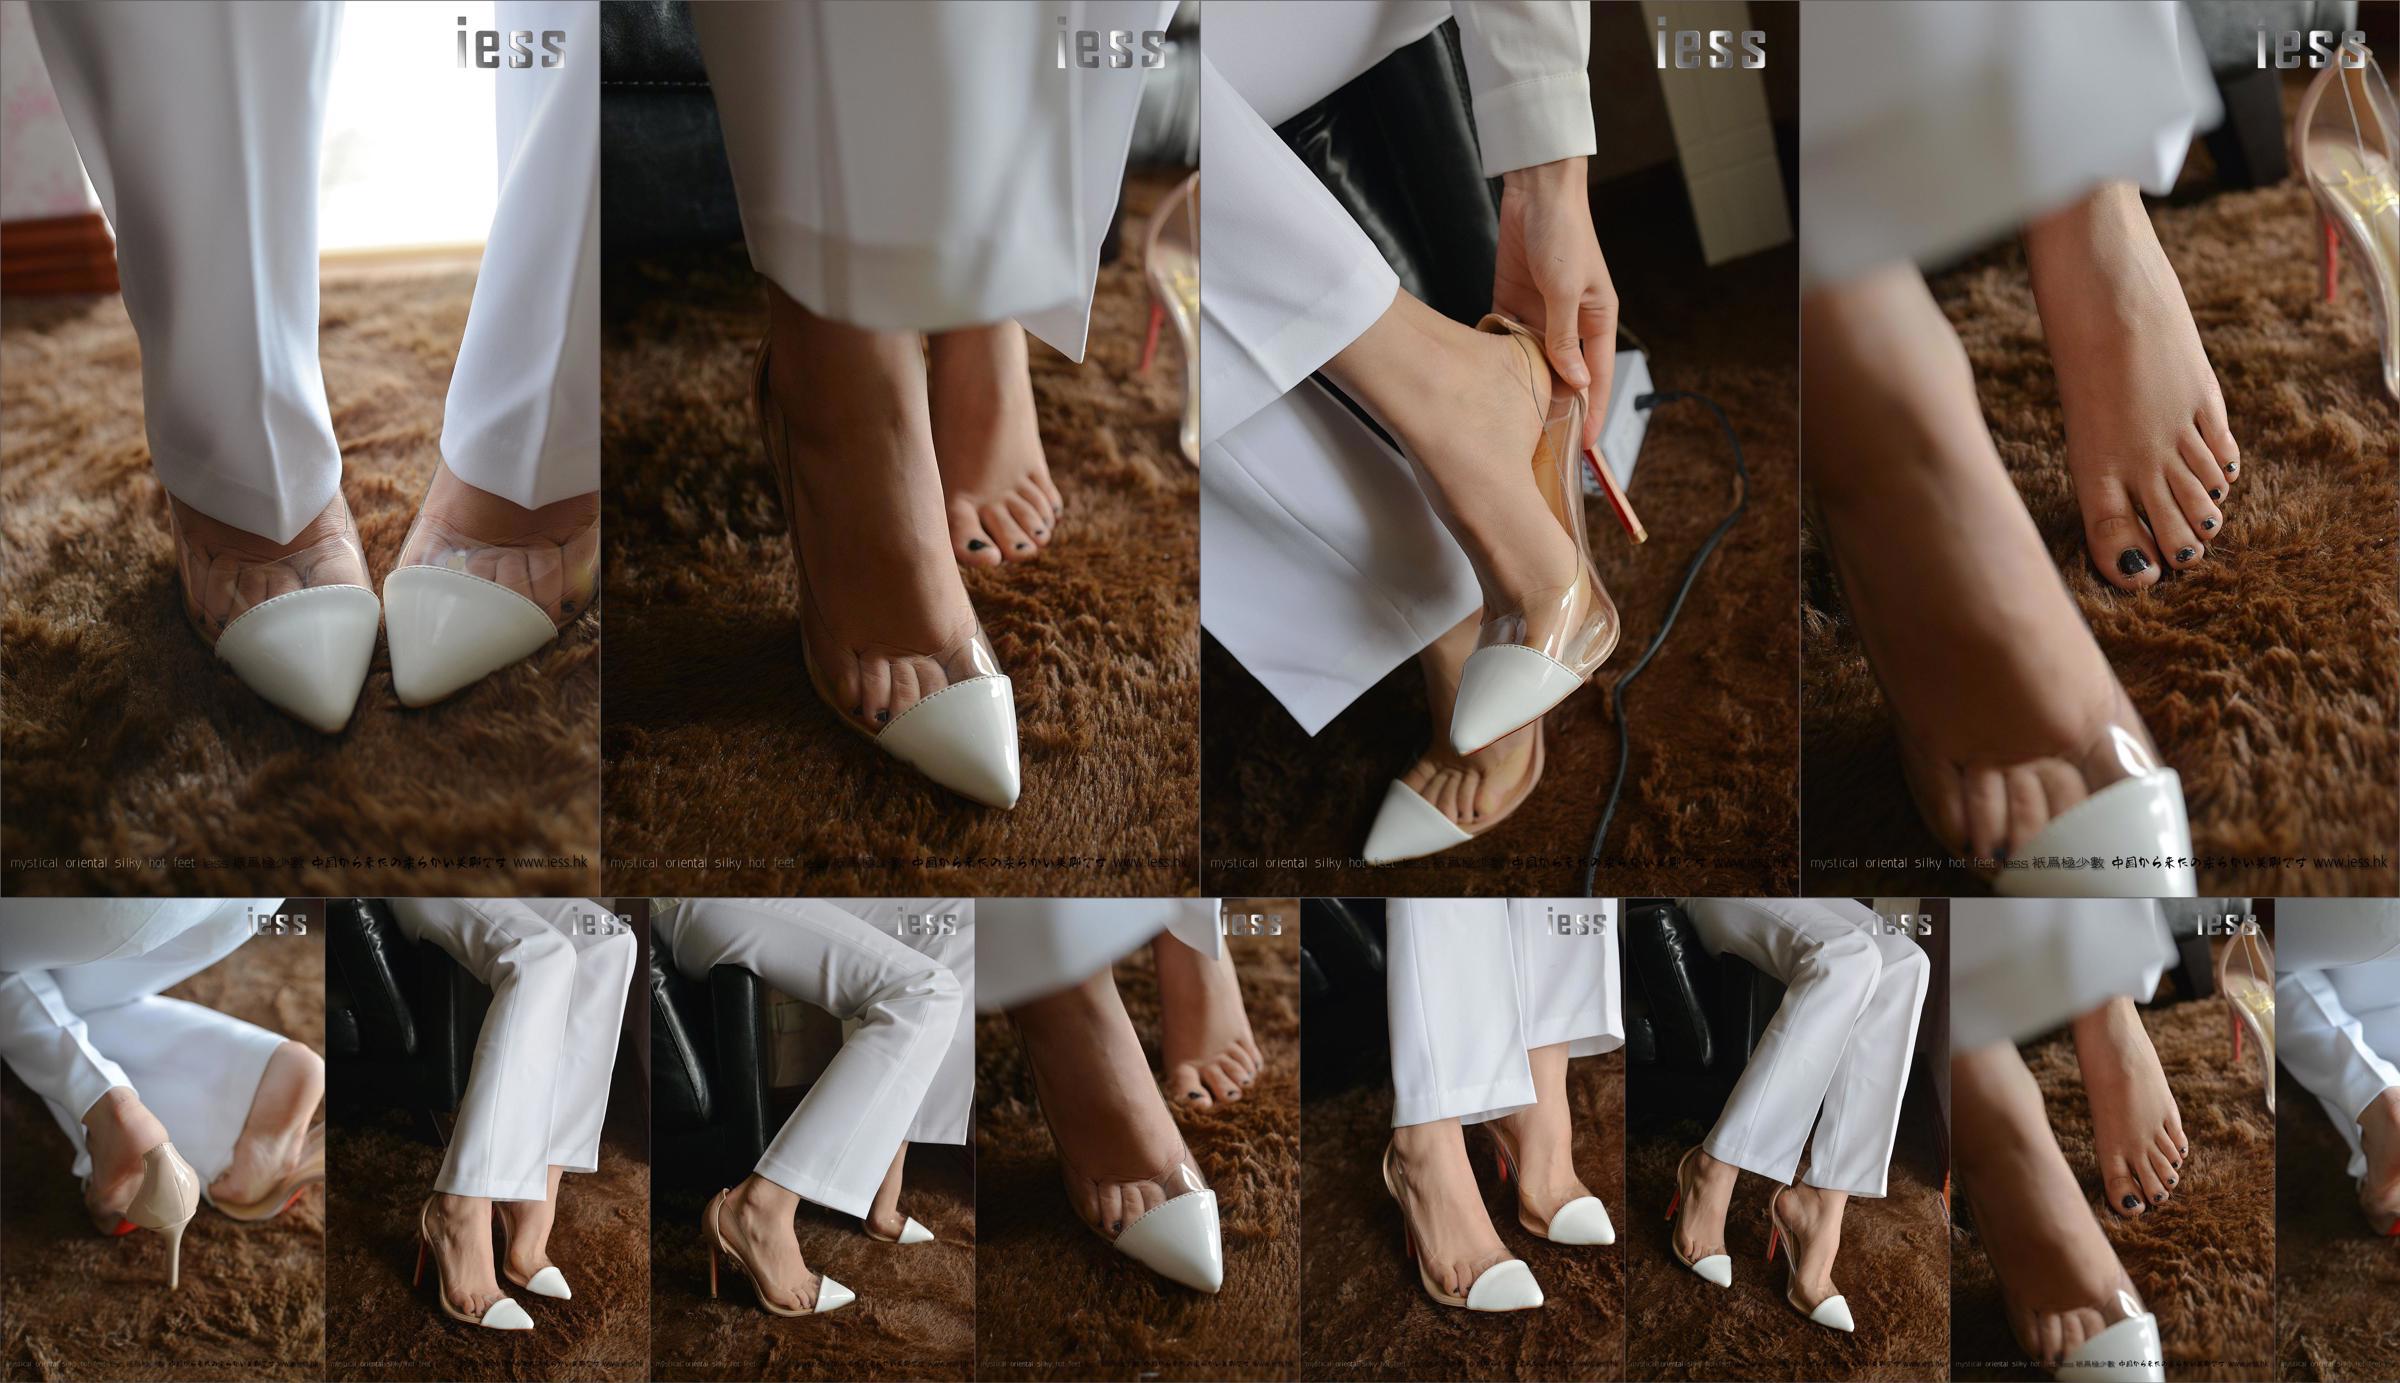 Seidiger Fuß Bento 058 Spannung "Collection-Bare Foot High Heels" [IESS Wei Si Fun Xiang] No.ae9d8e Seite 4